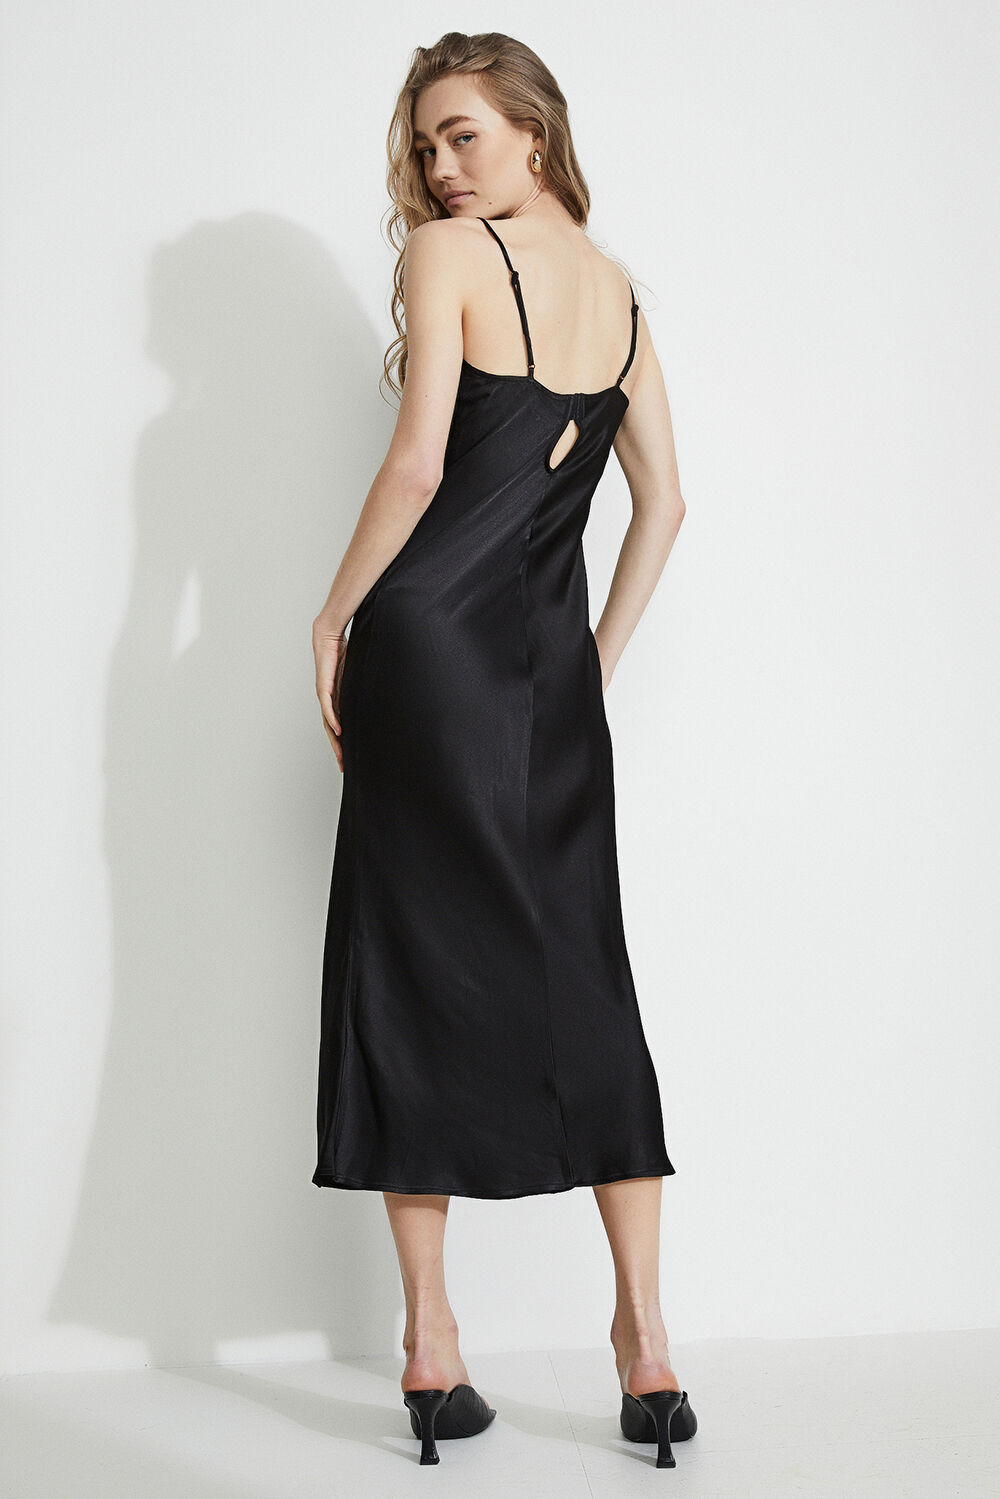 Buy > black inner slip dress > in stock